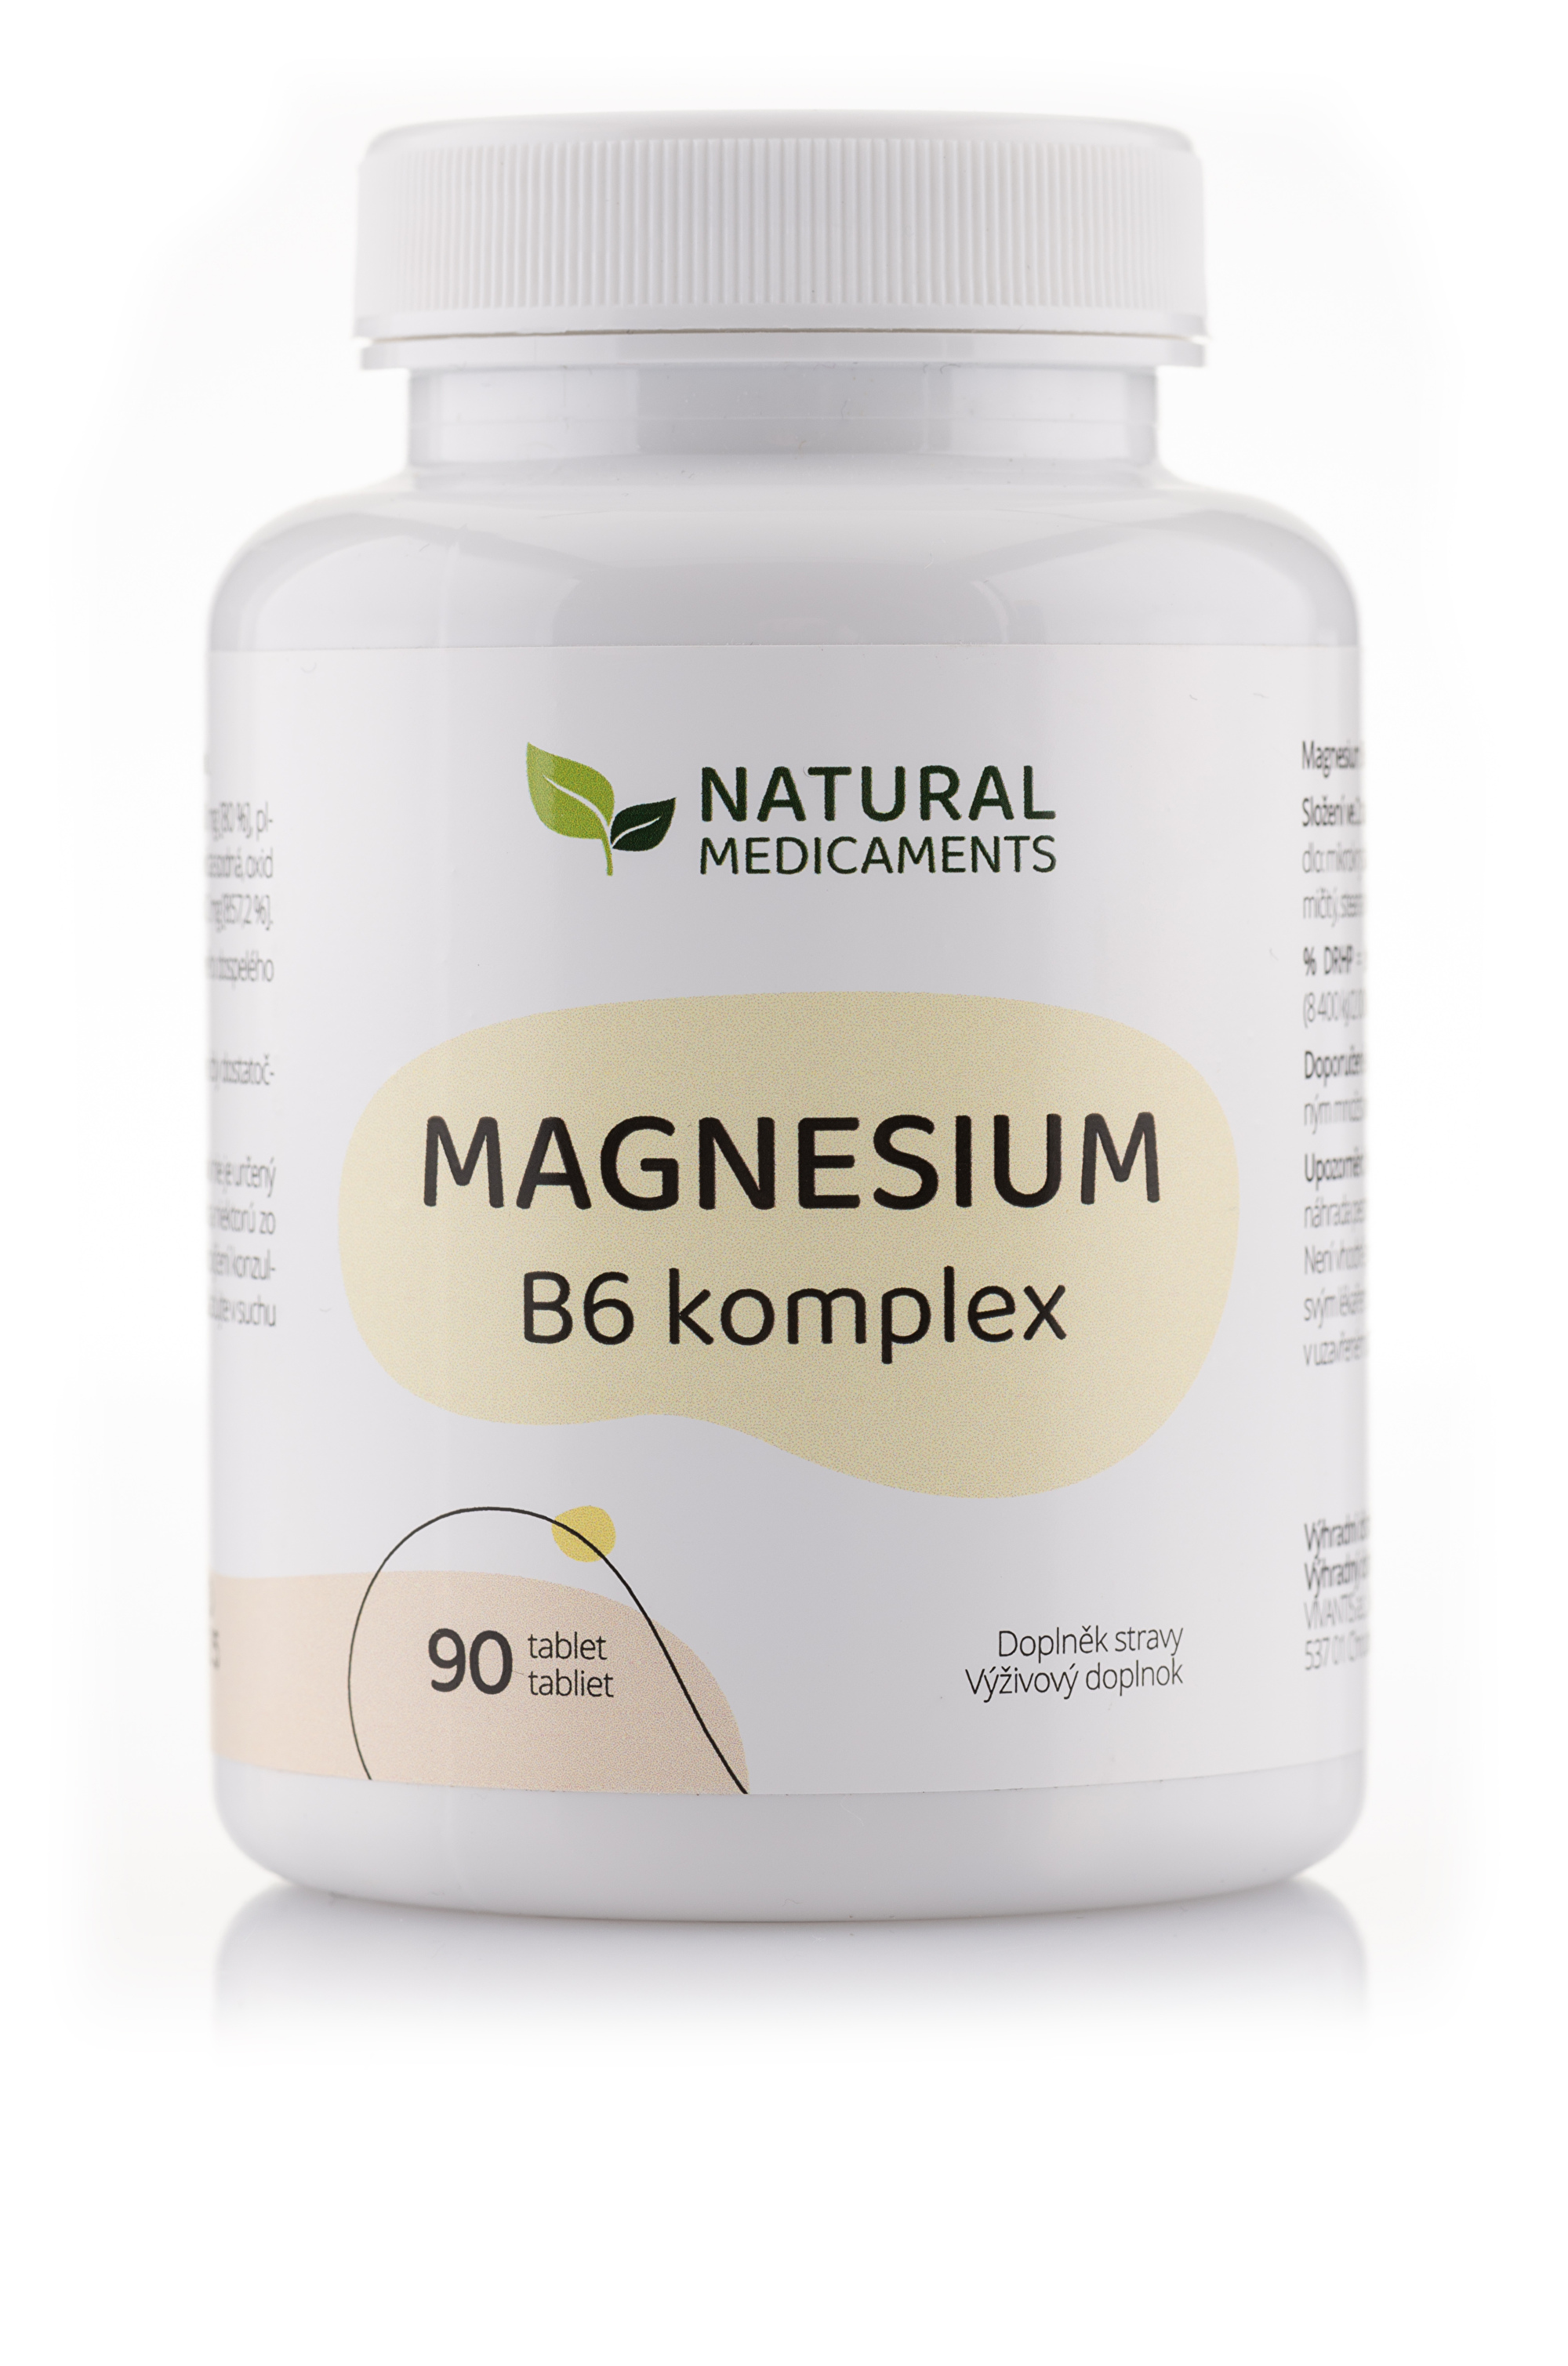 Natural Medicaments Magnesium B6 komplex 90 tabliet